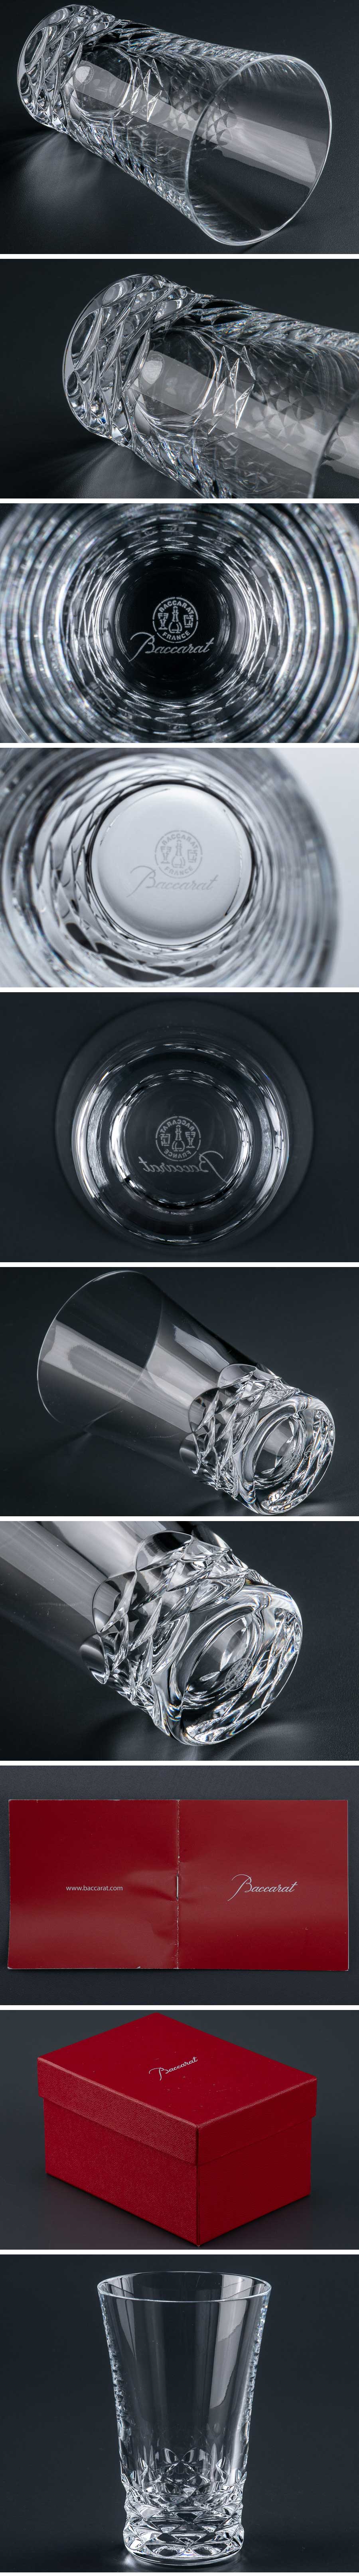 100%新品SALE『 バカラ baccarat「 ブラーヴァ 」タンブラー グラス 箱付 9930 』 洋食器 ブランド テーブルウェア クリスタルガラス 工芸ガラス